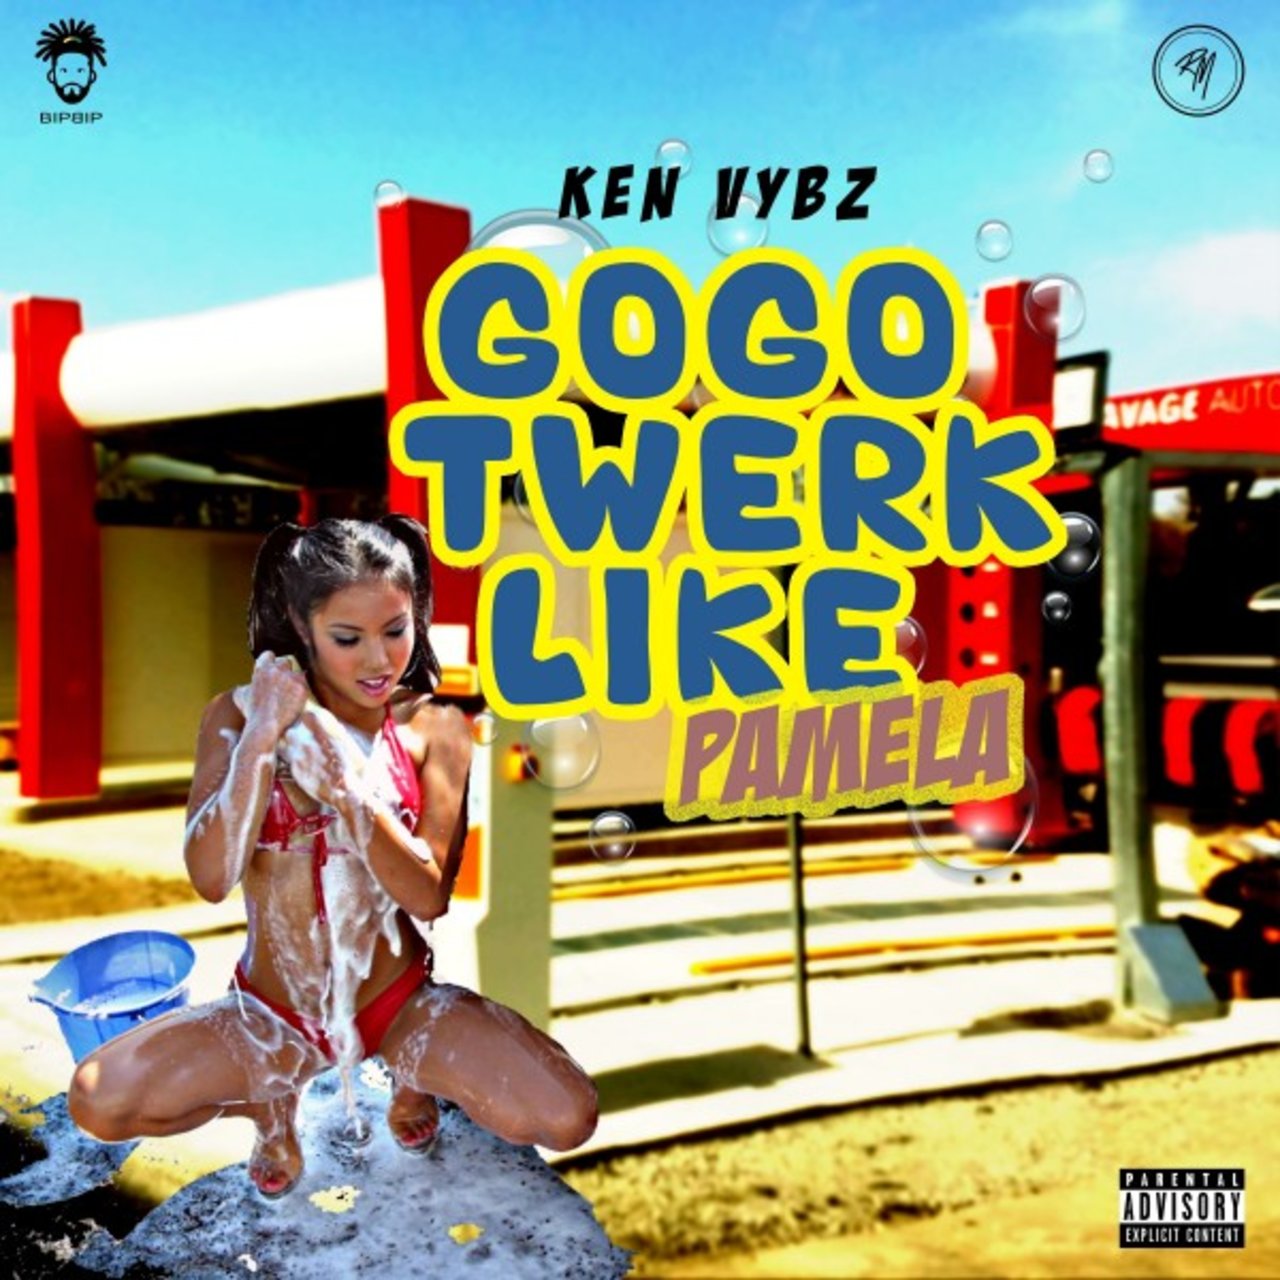 Ken Vybz - Gogo Twerk Like Pamela (Cover)